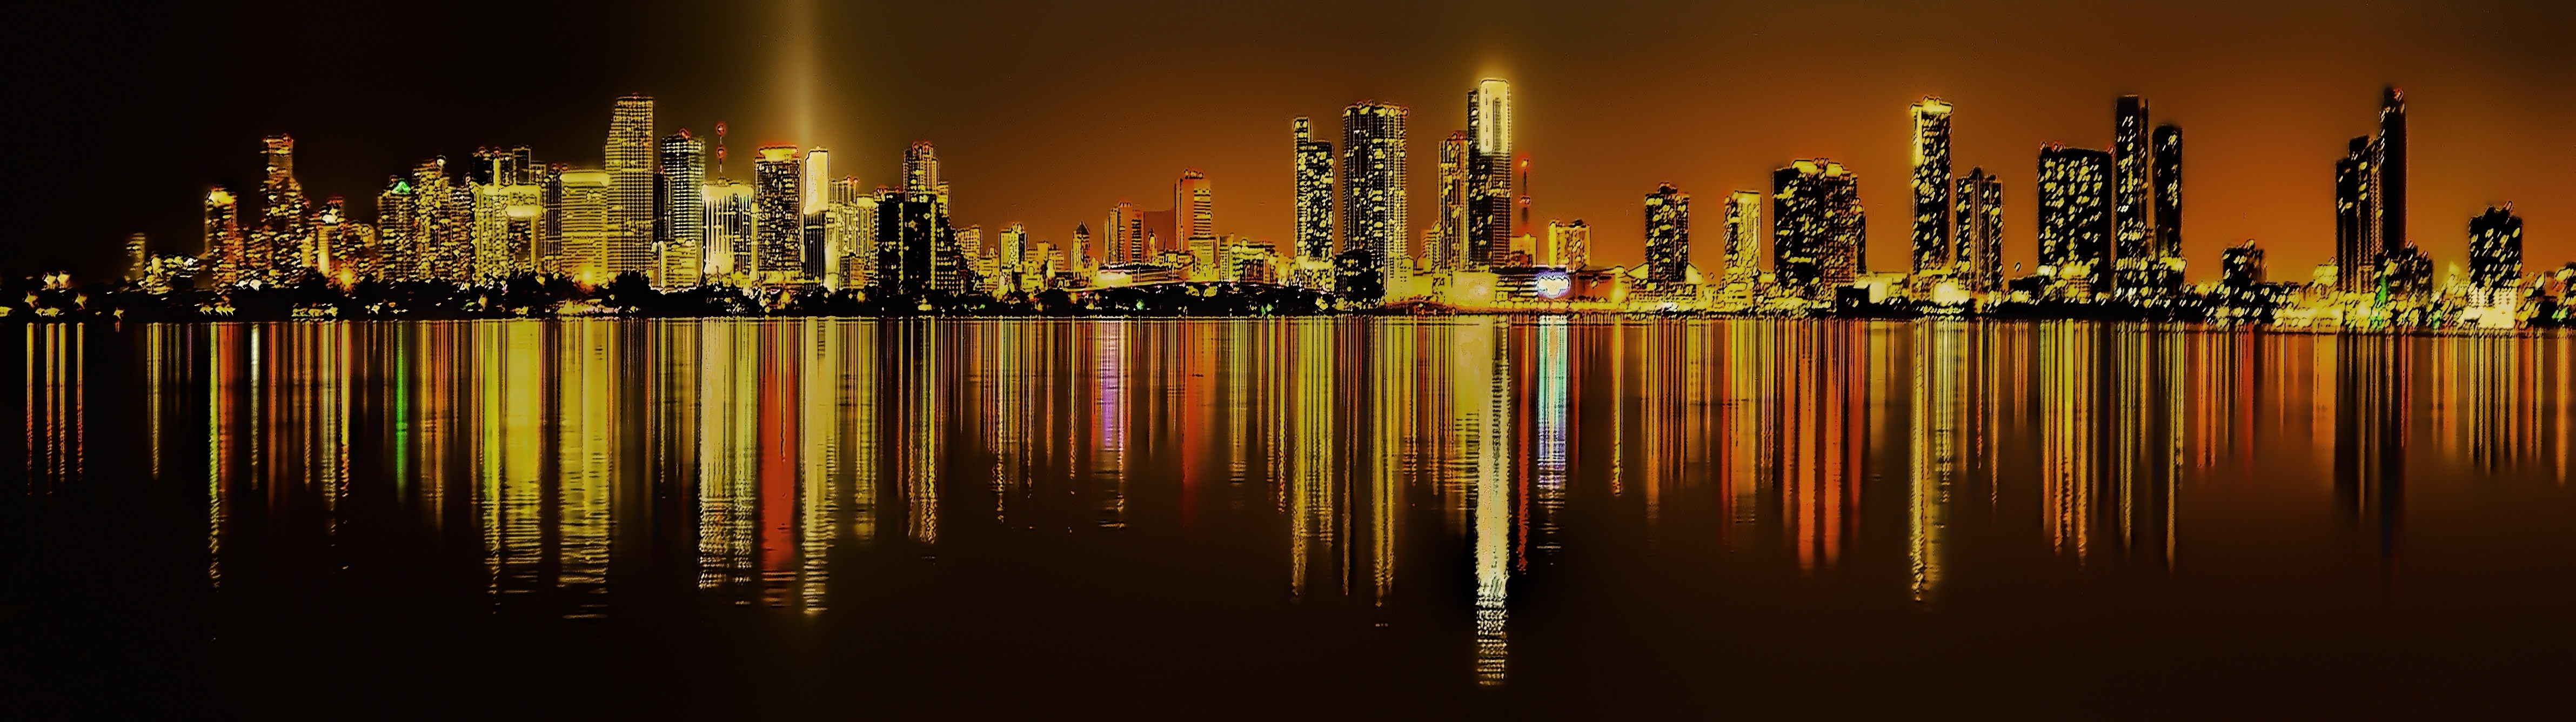 Miami, Downtown, Florida, Cityscape, reflection, night